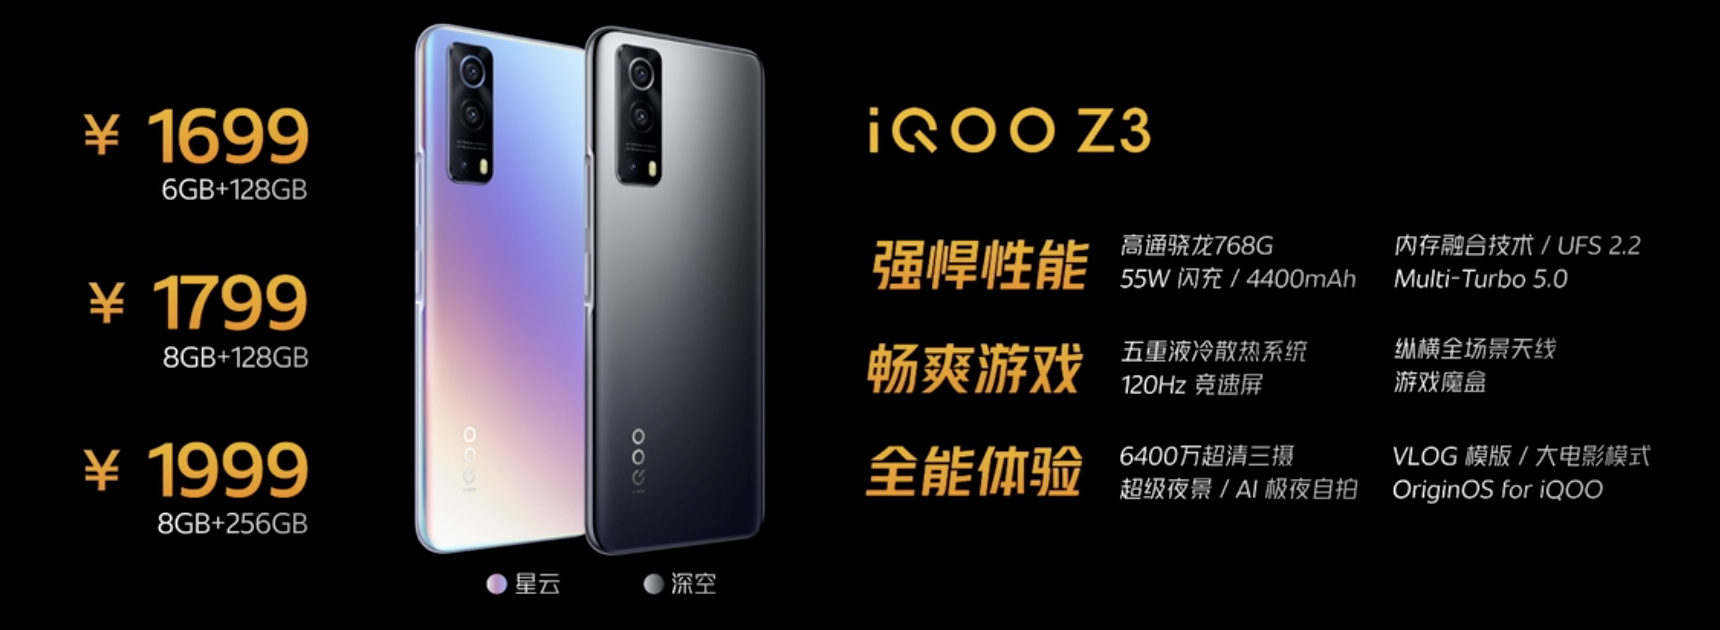 iQOO Z3发布 主打大众级旗舰售价1699元起